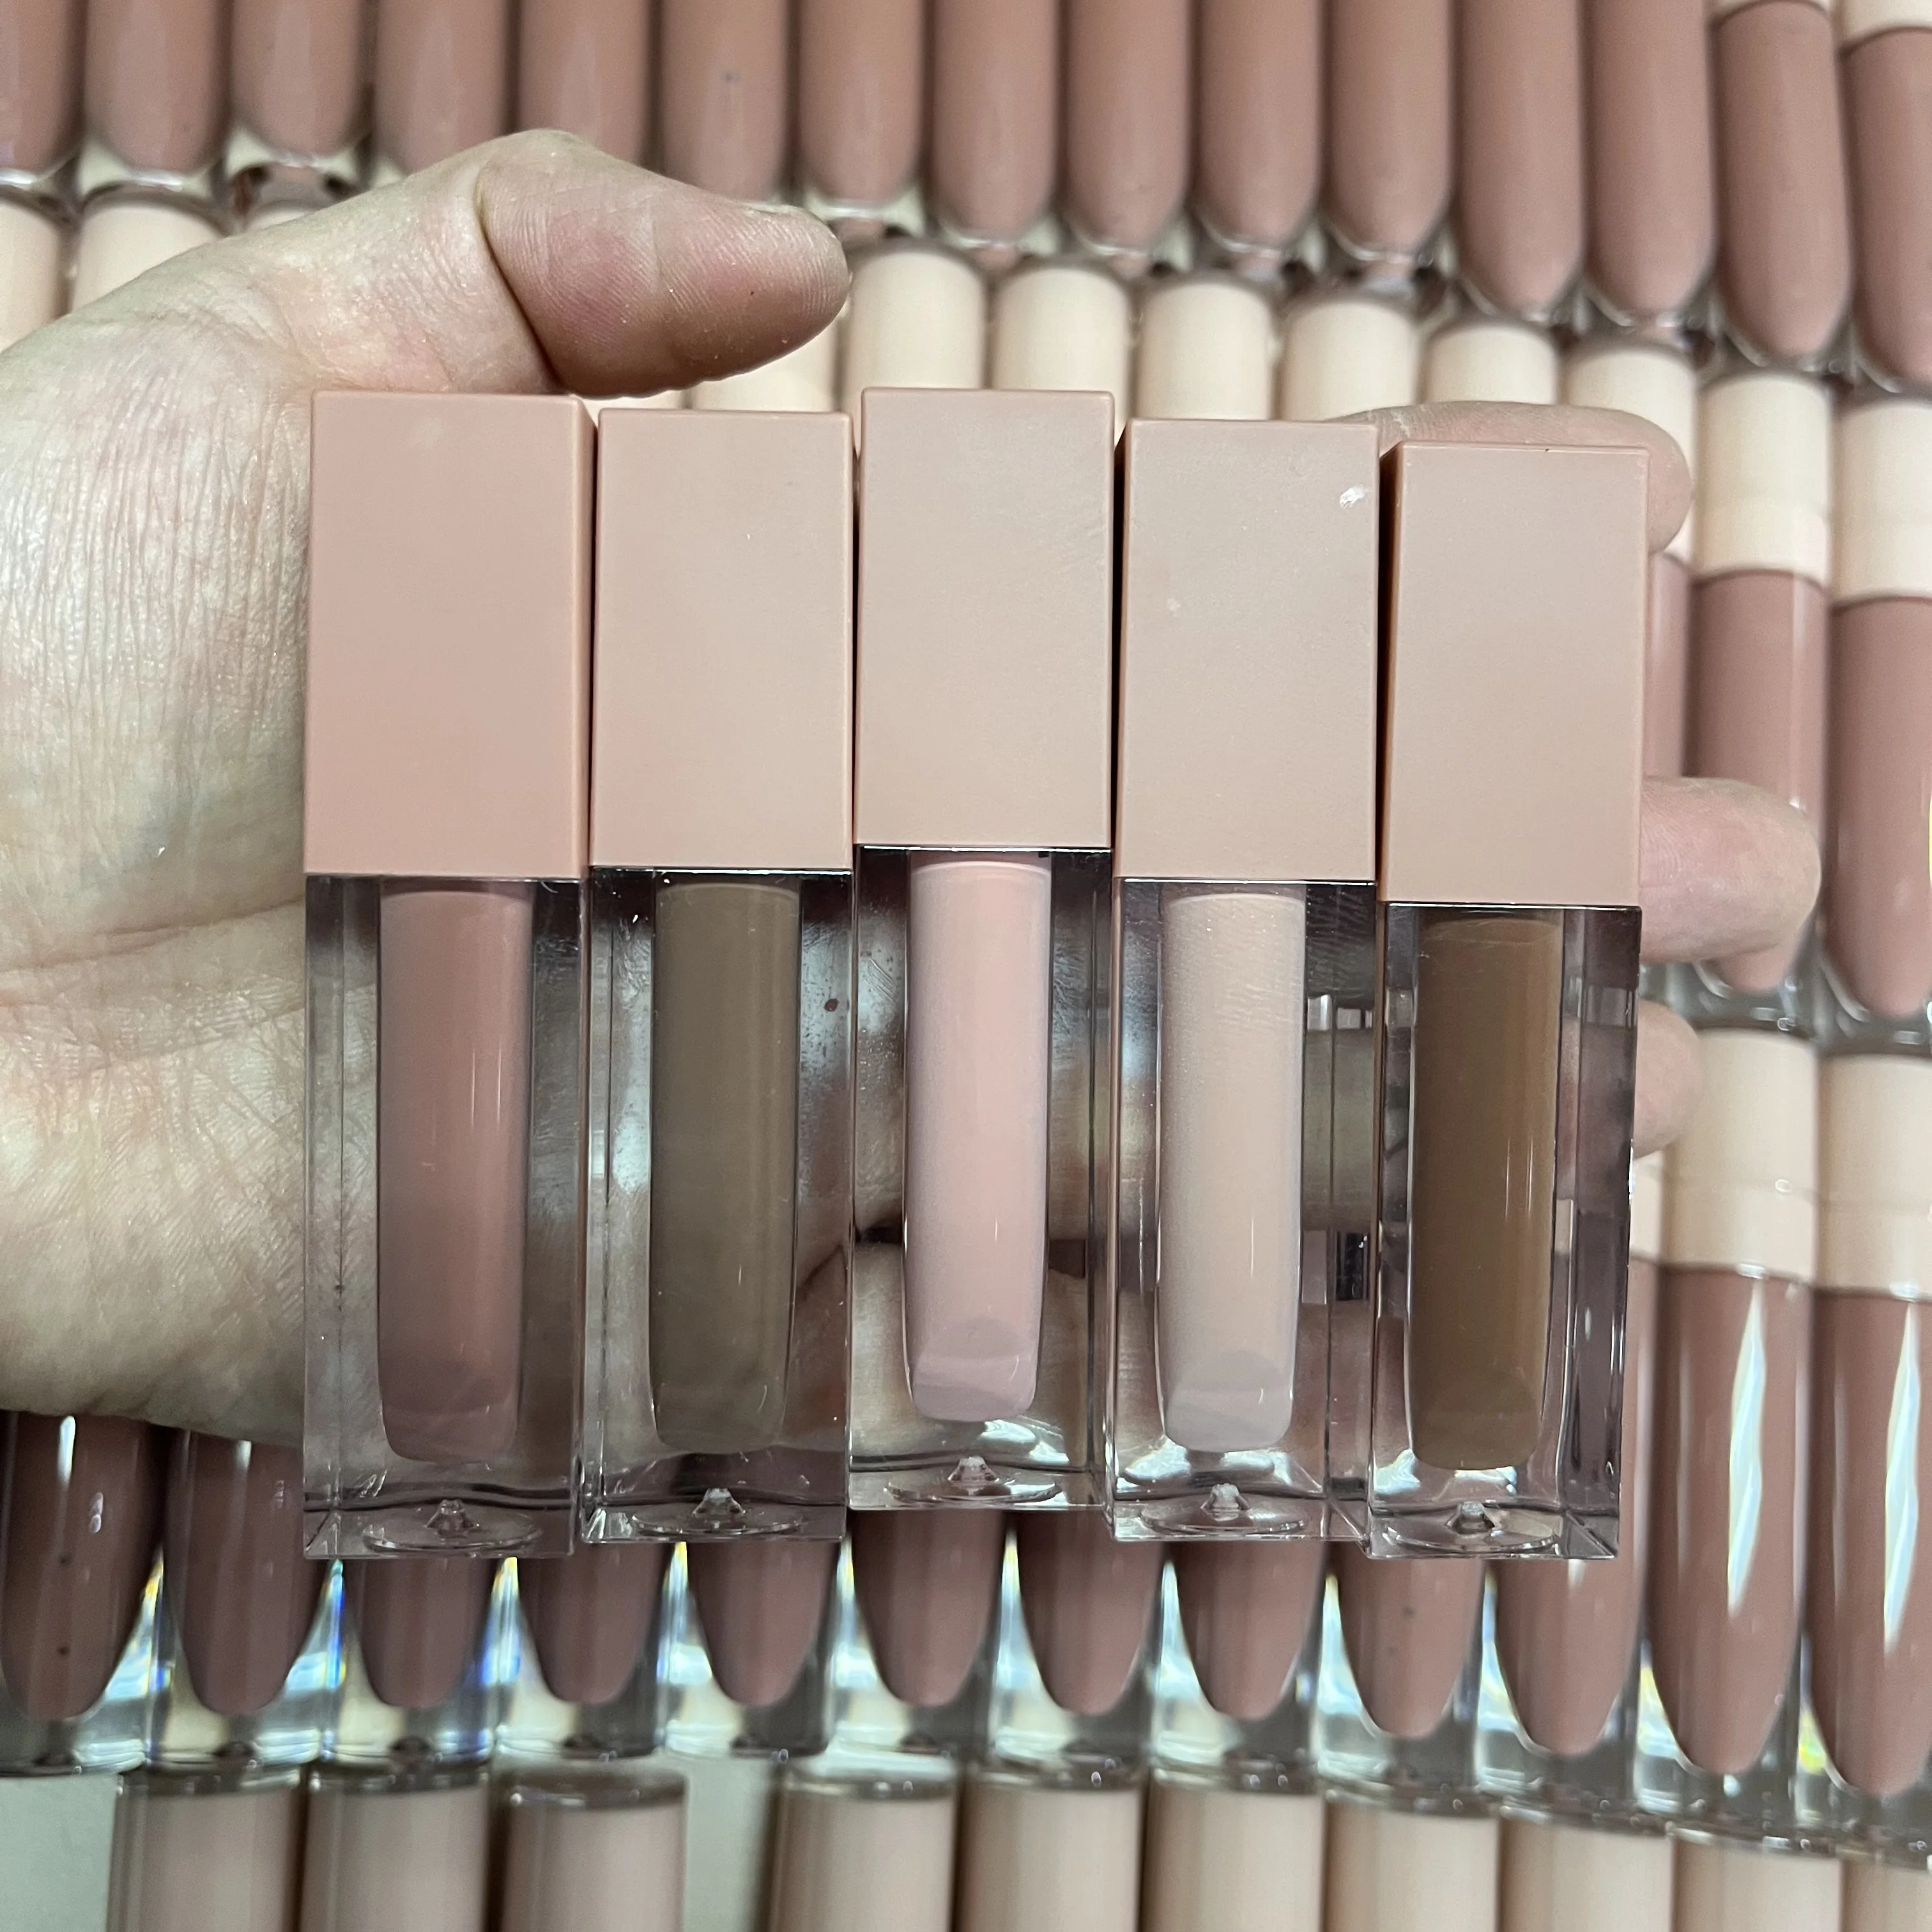 

Lipstick vendor wholesale high pigment vegan creamy matte liquid lipstick private label